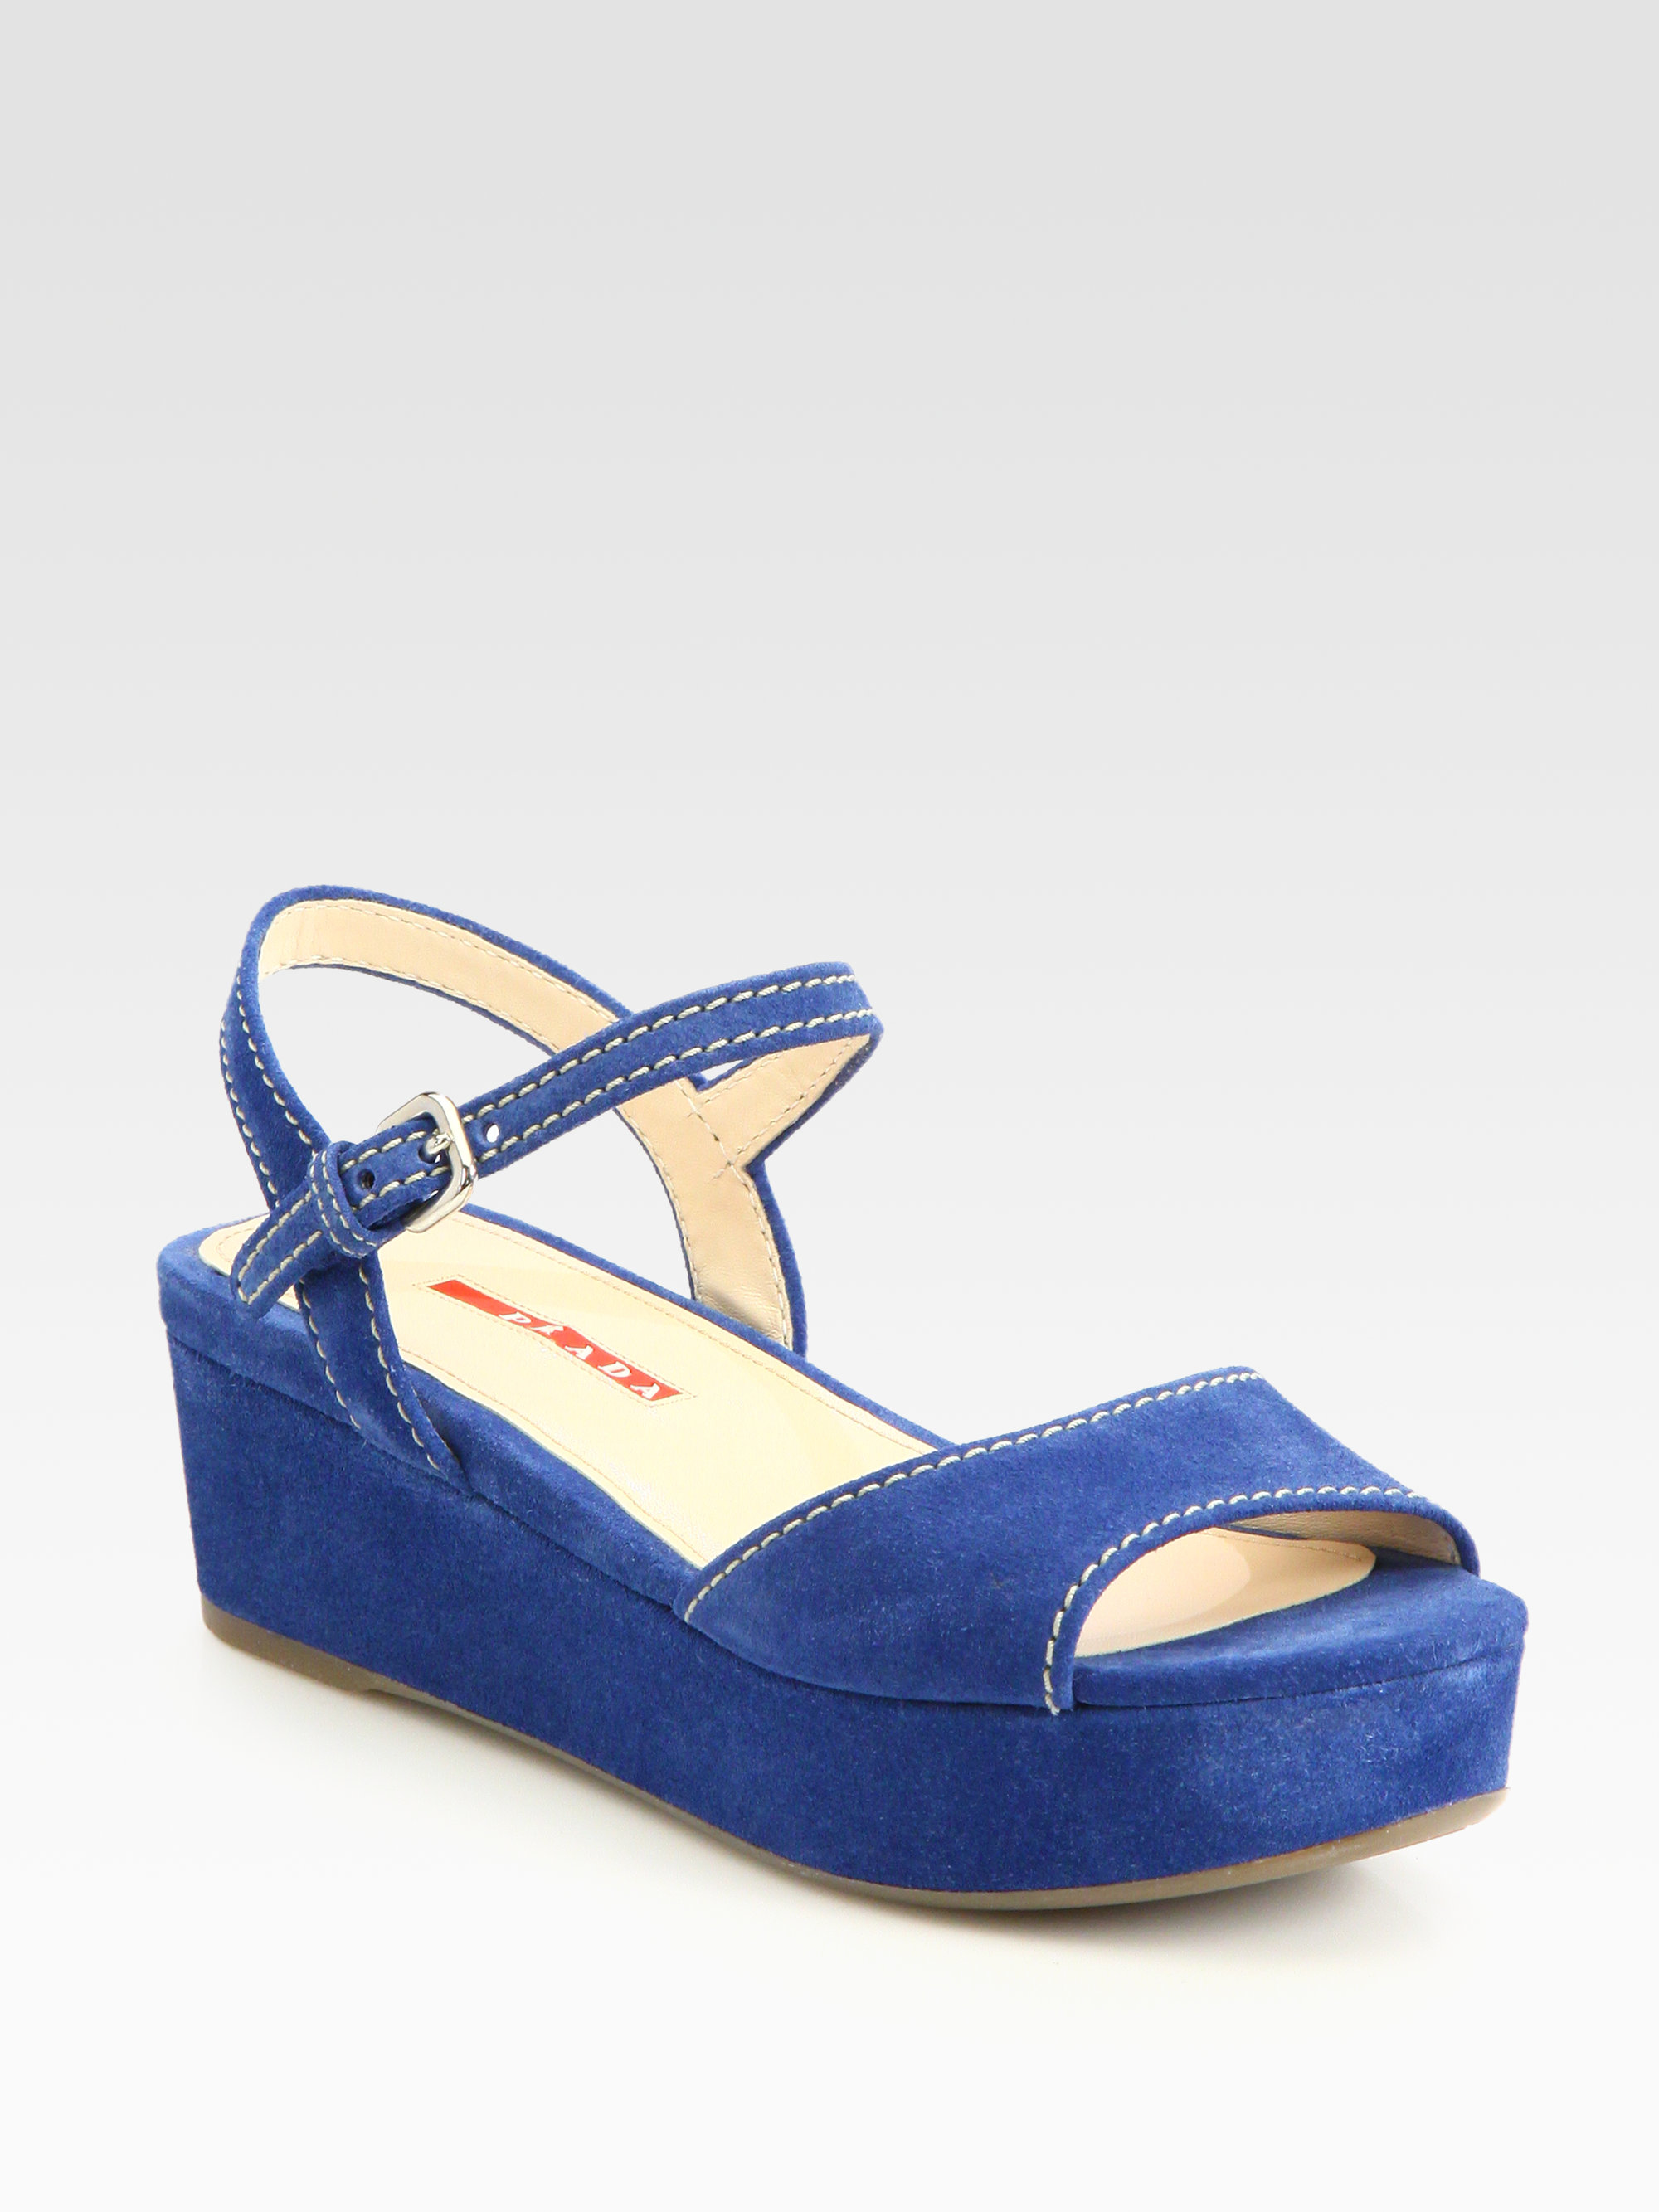 Prada Suede Platform Wedge Sandals in Blue | Lyst